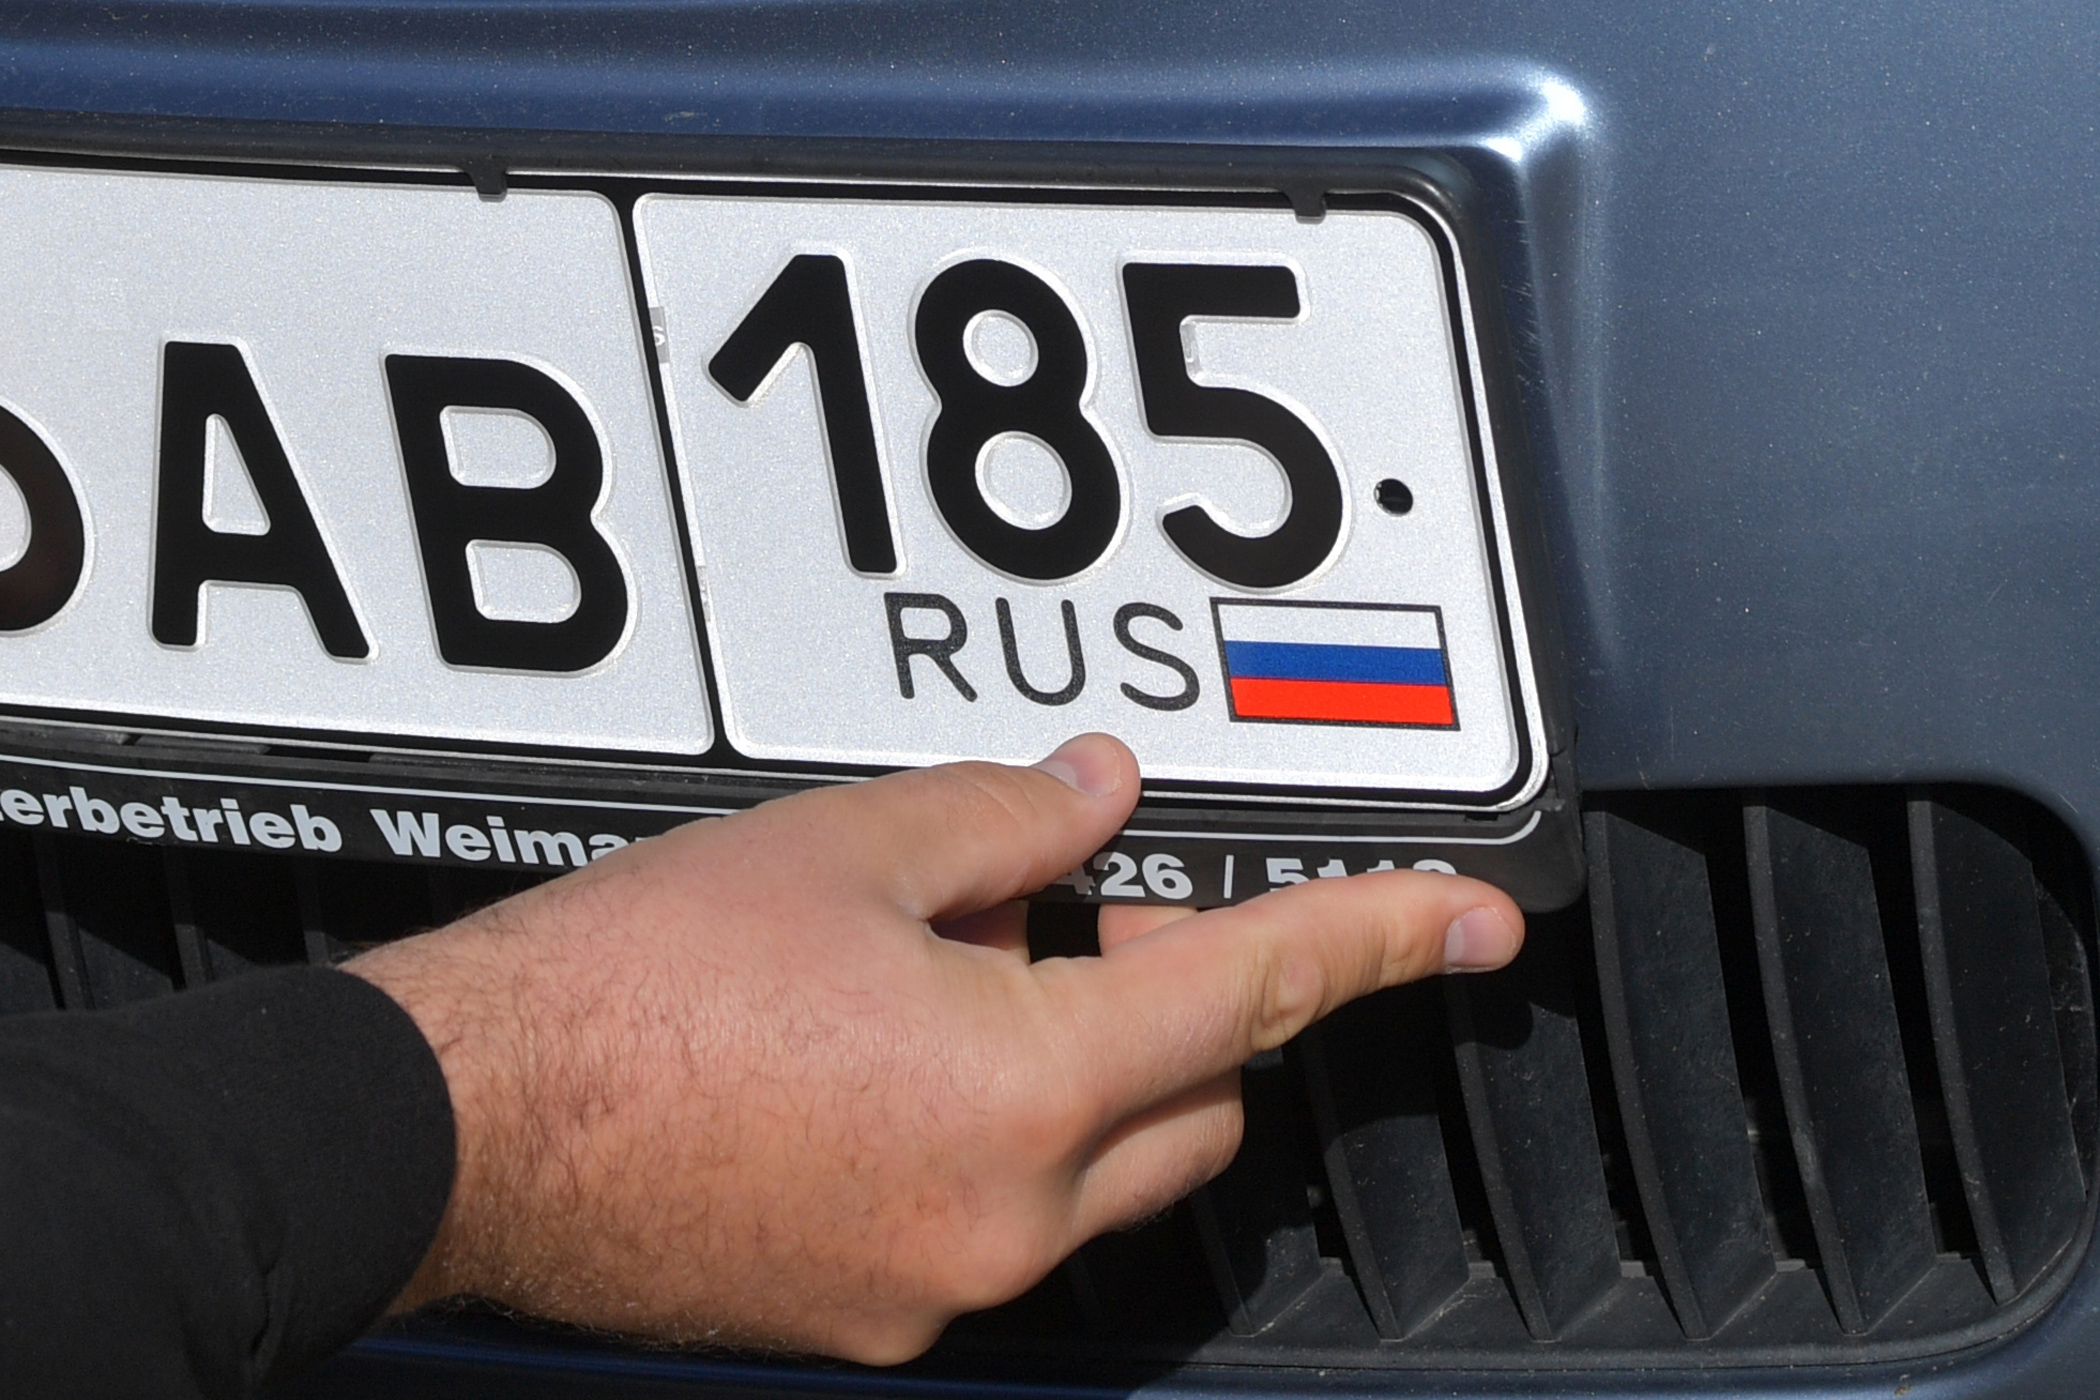 35 регион россии на автомобилях. Автомобильный номерной знак. Автомобильные номера ЛНР. Российские номерные знаки. Автомобильные номера ДНР.